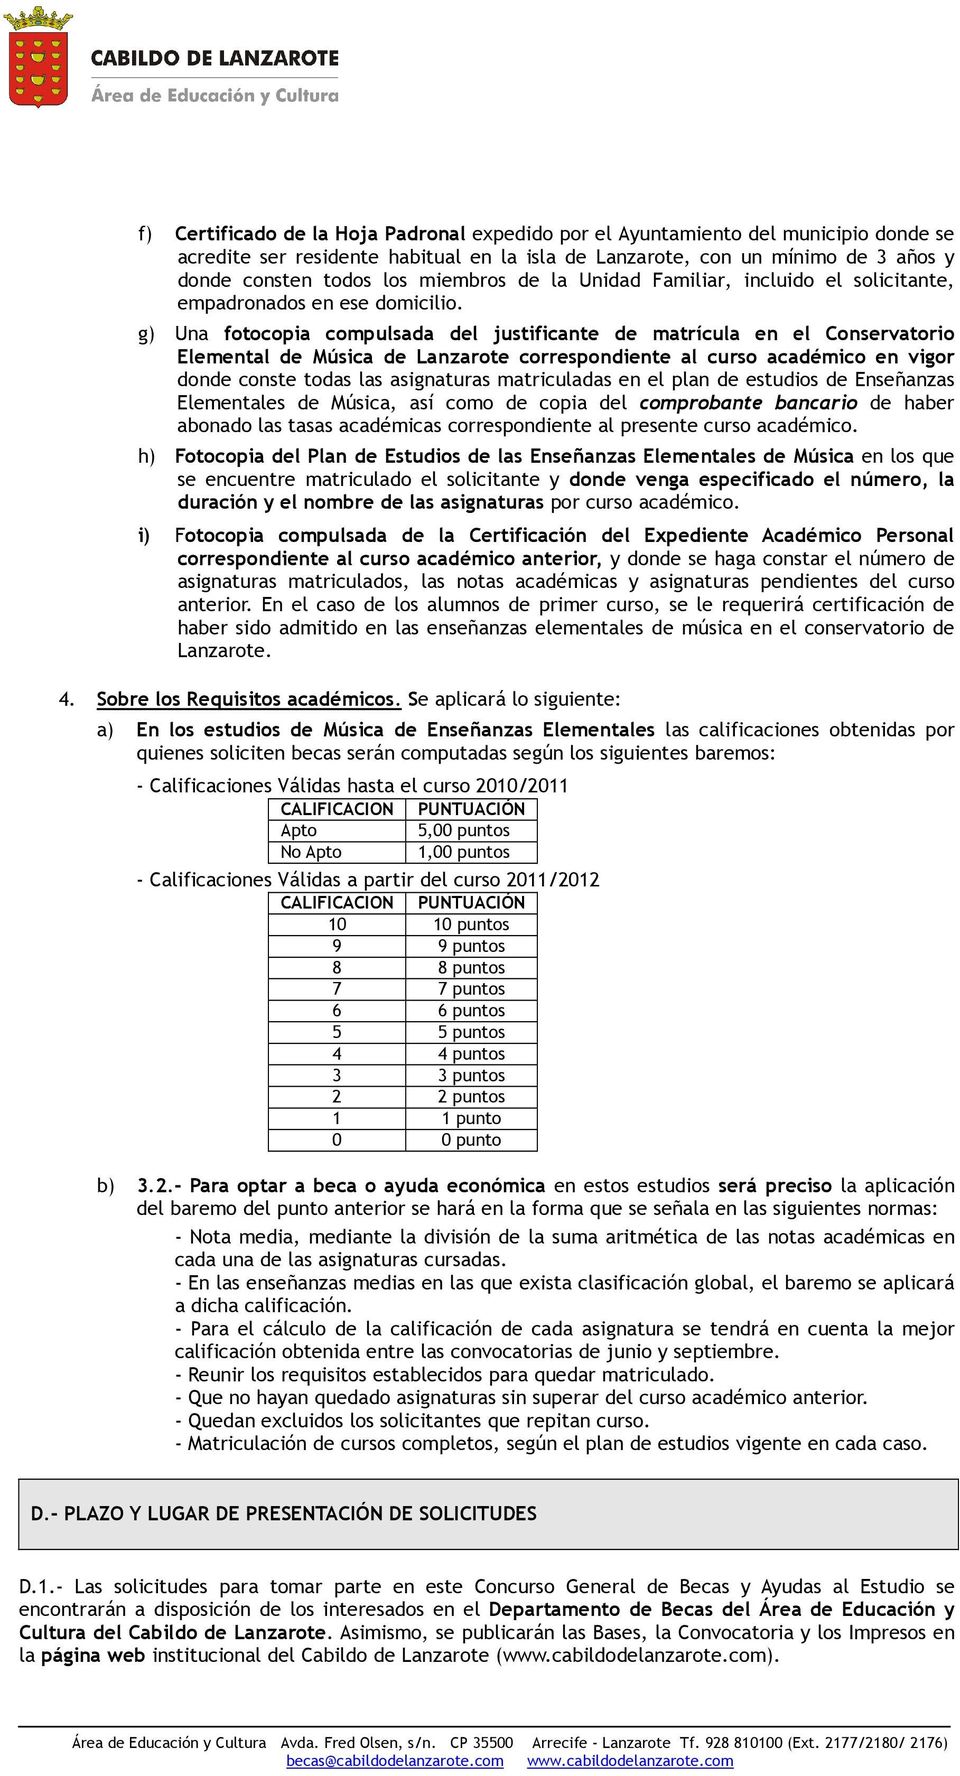 g) Una fotocopia compulsada del justificante de matrícula en el Conservatorio Elemental de Música de Lanzarote correspondiente al curso académico en vigor donde conste todas las asignaturas